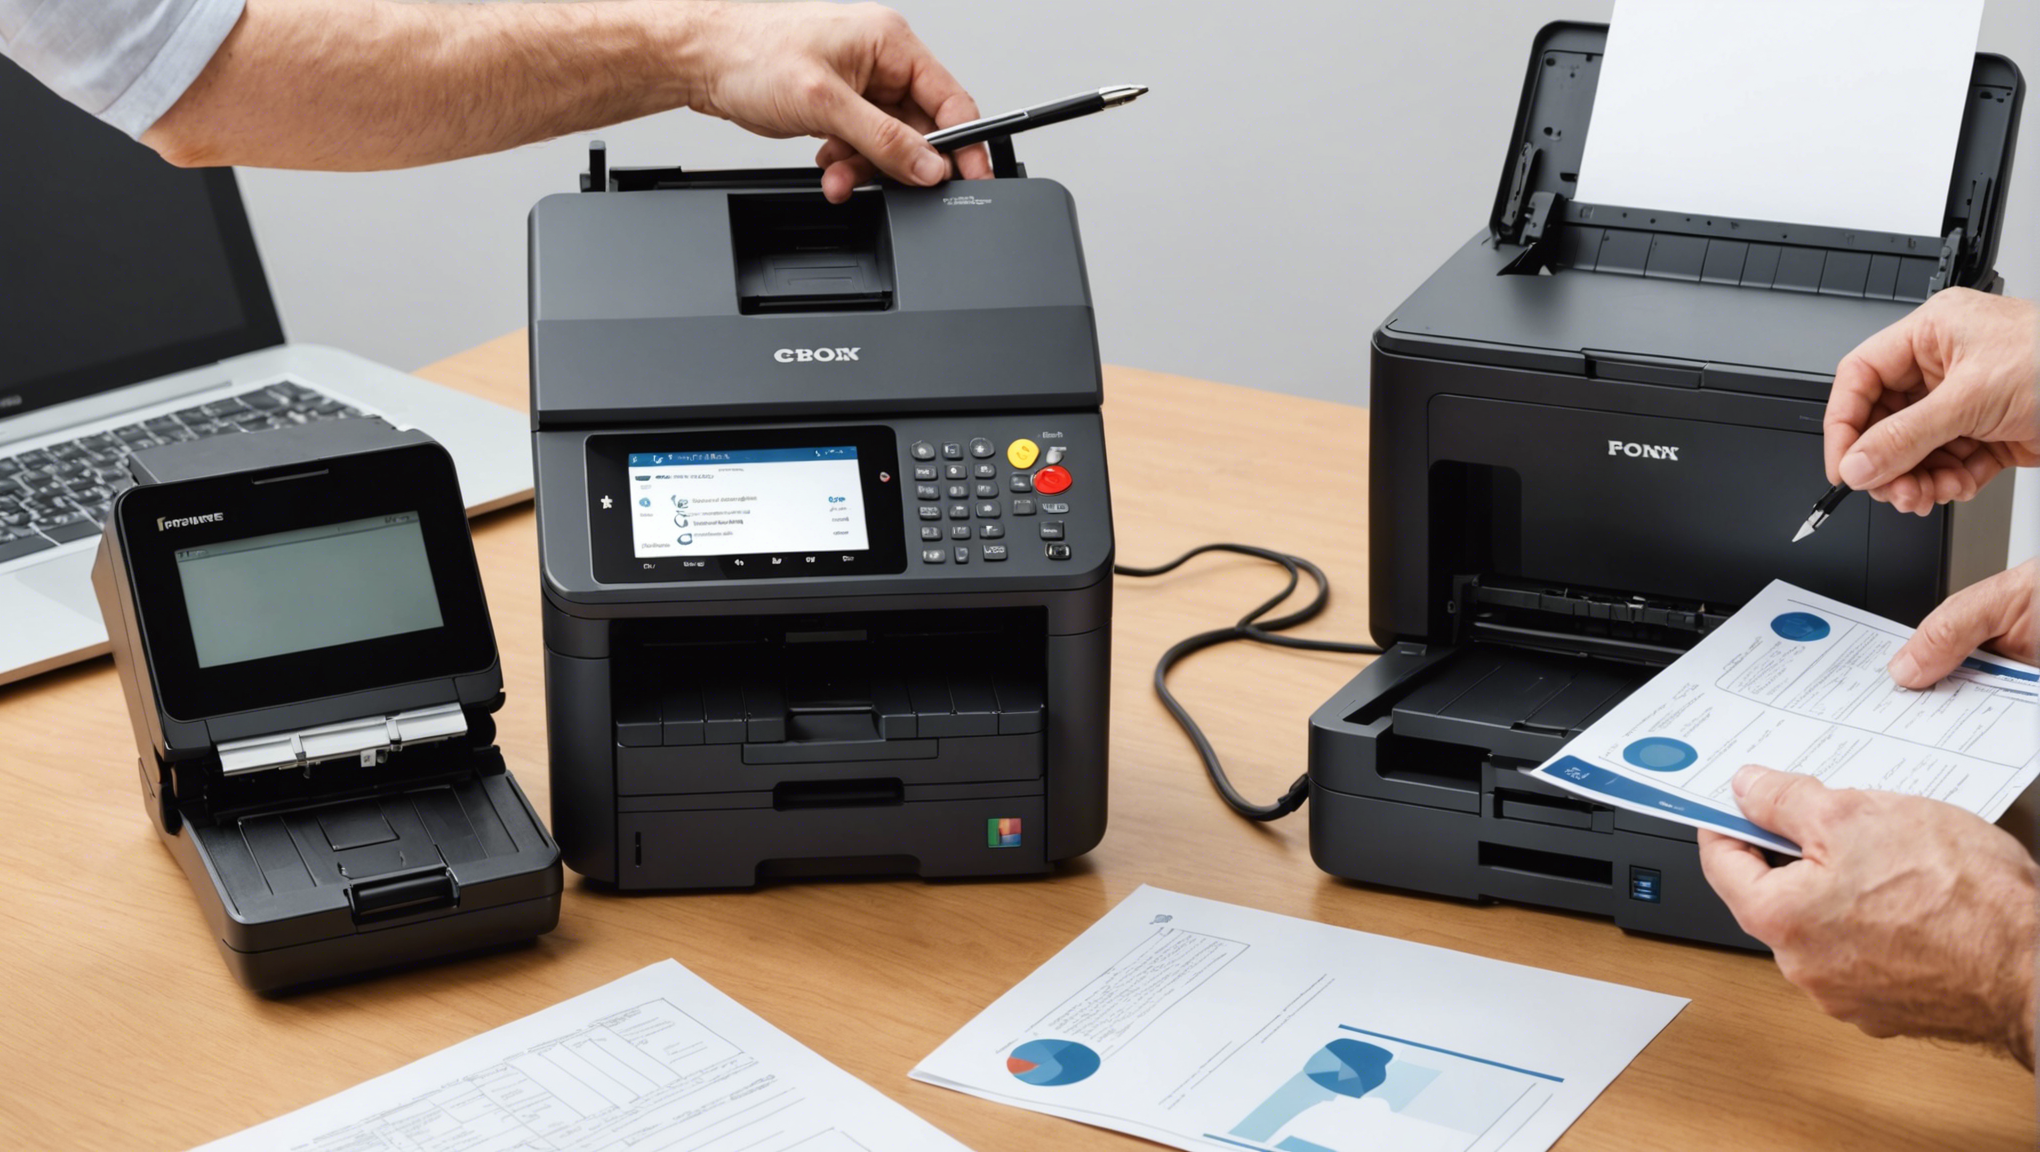 découvrez notre gamme d'imprimantes professionnelles à prix abordables, dotées de nombreuses fonctionnalités de numérisation pour simplifier votre travail.